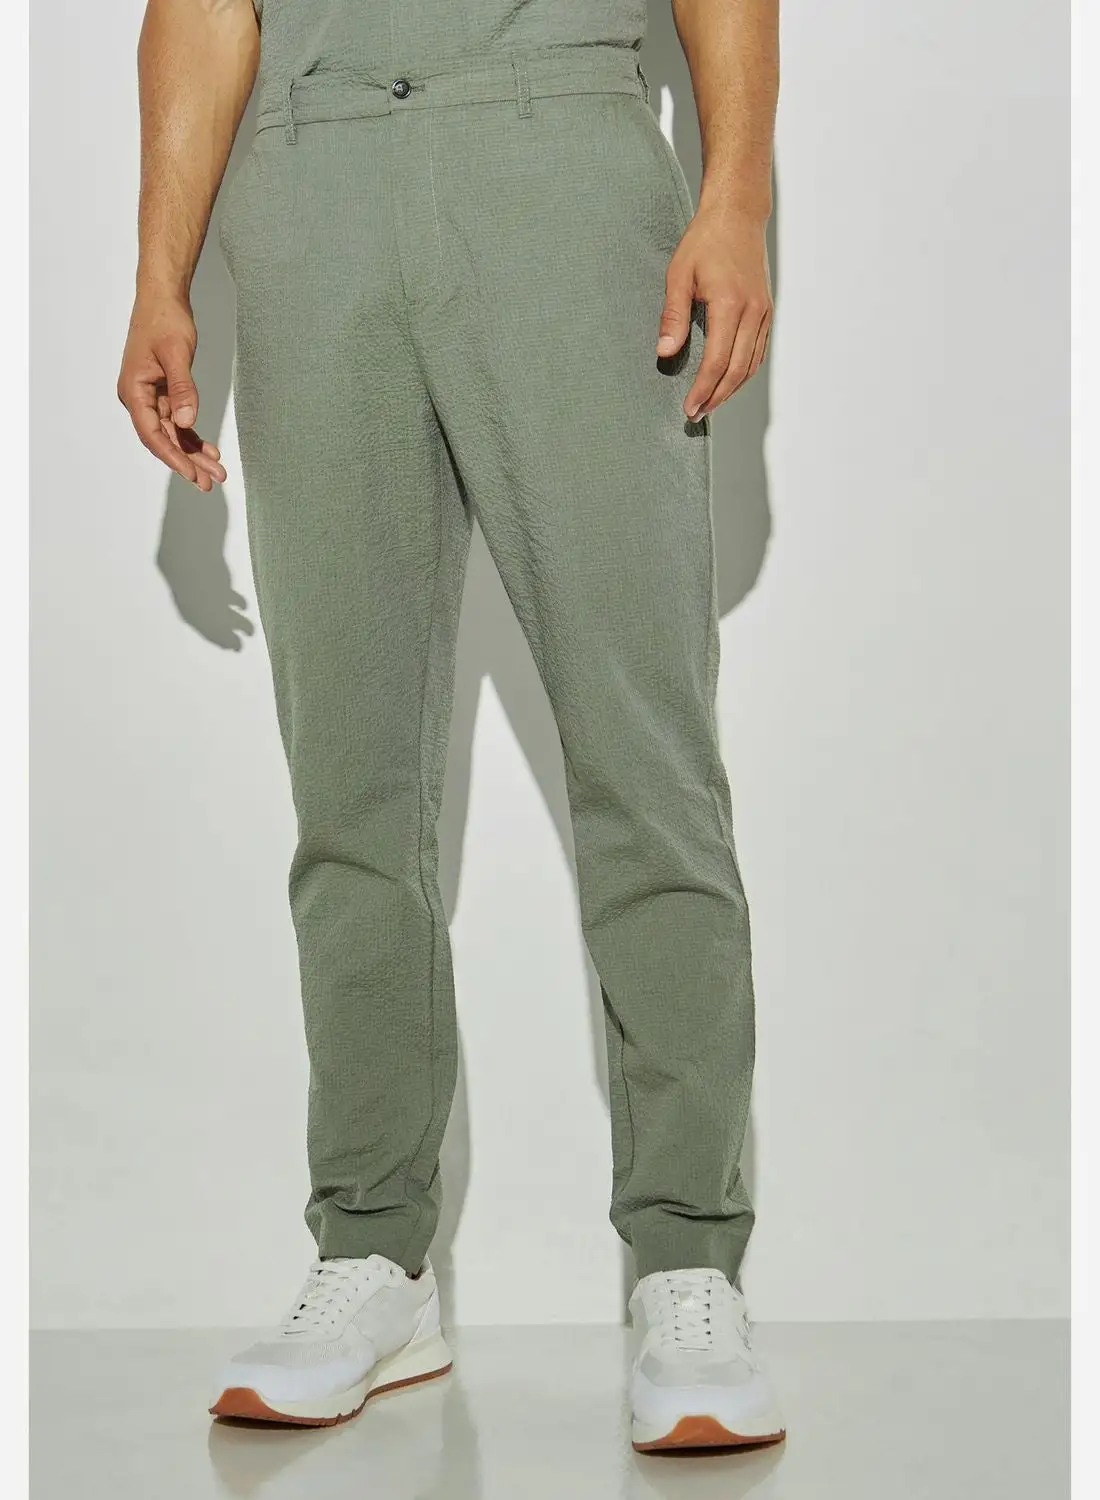 Iconic Slim Fit Textured Seersucker Pants